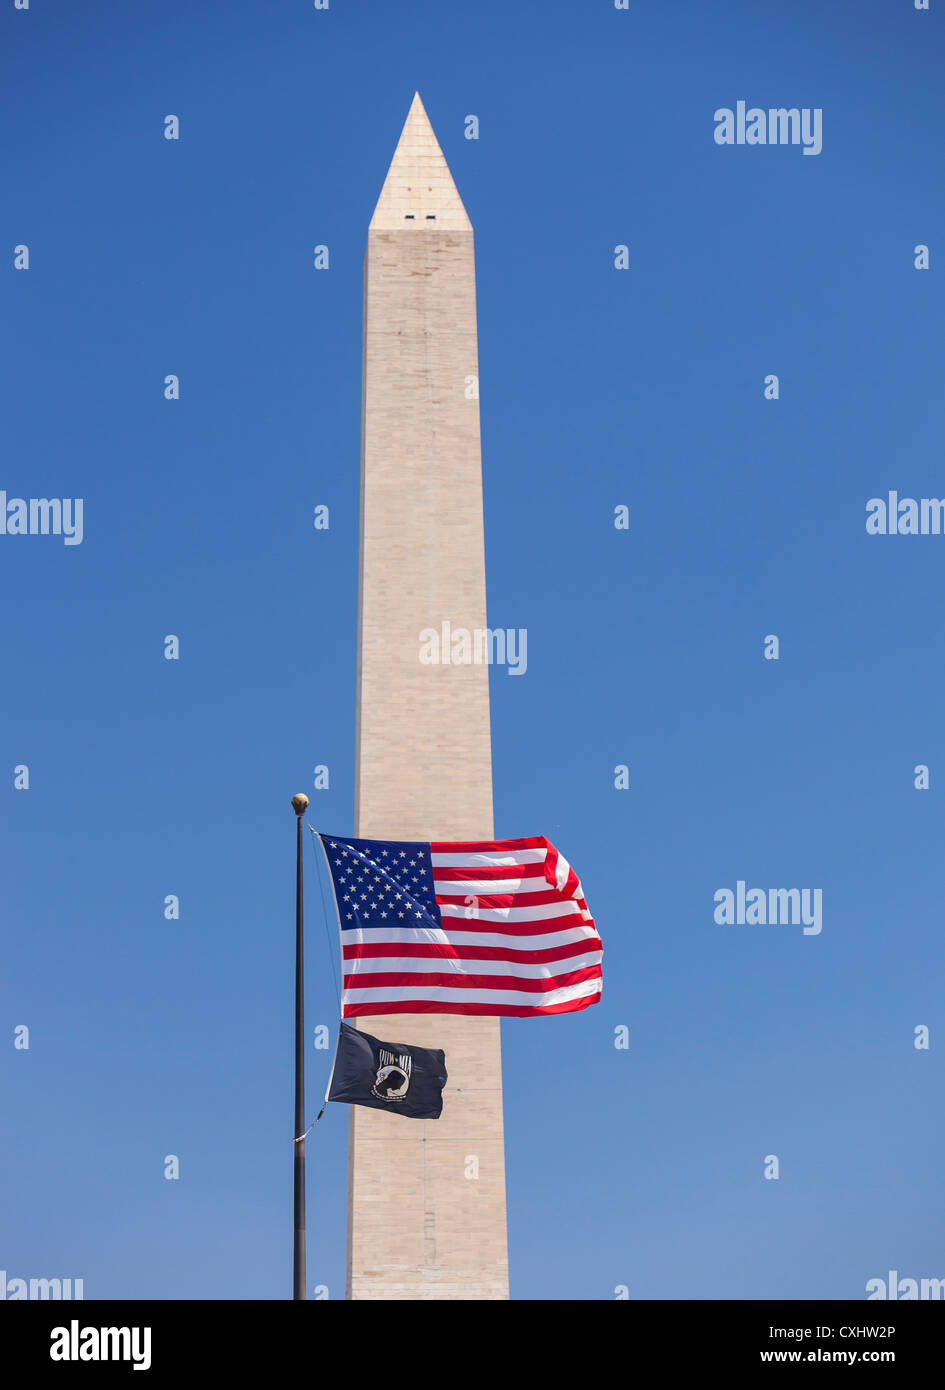 WASHINGTON, DC, USA - Washington Monument with US flag and POW MIA flag. Stock Photo